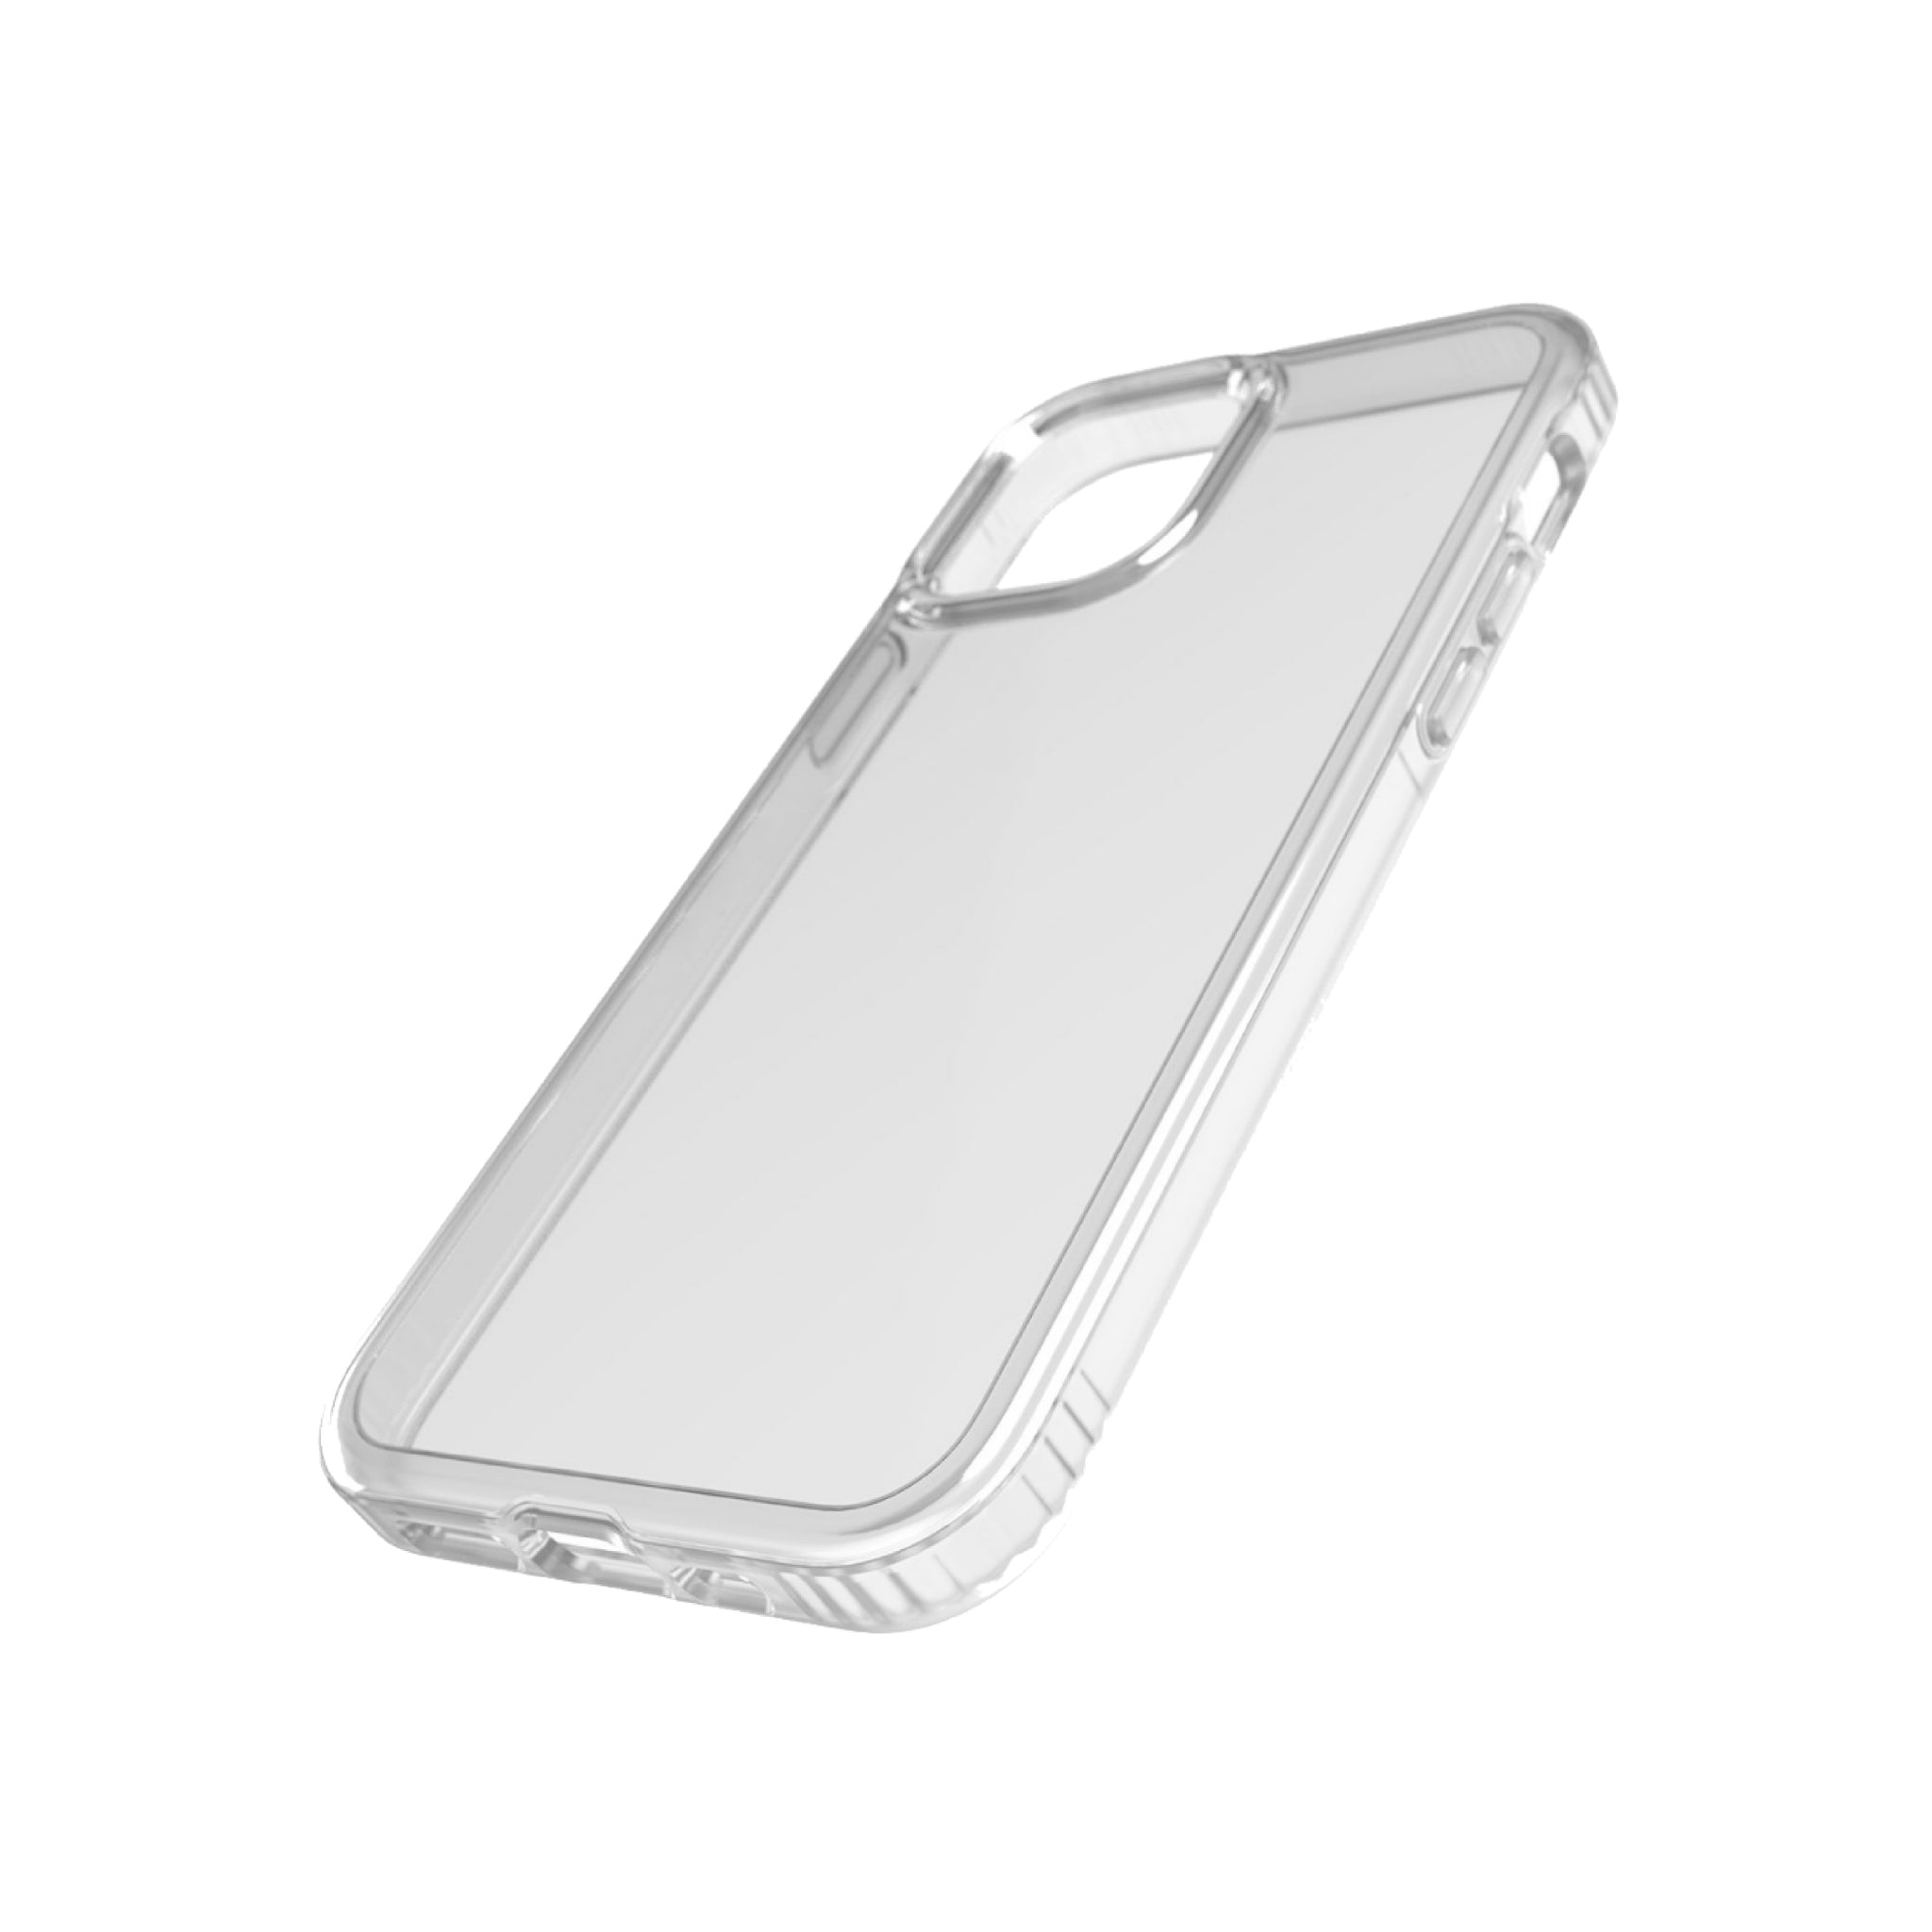 Funda transparente colgante para Iphone 12 Mini. - ENVIO GRATIS